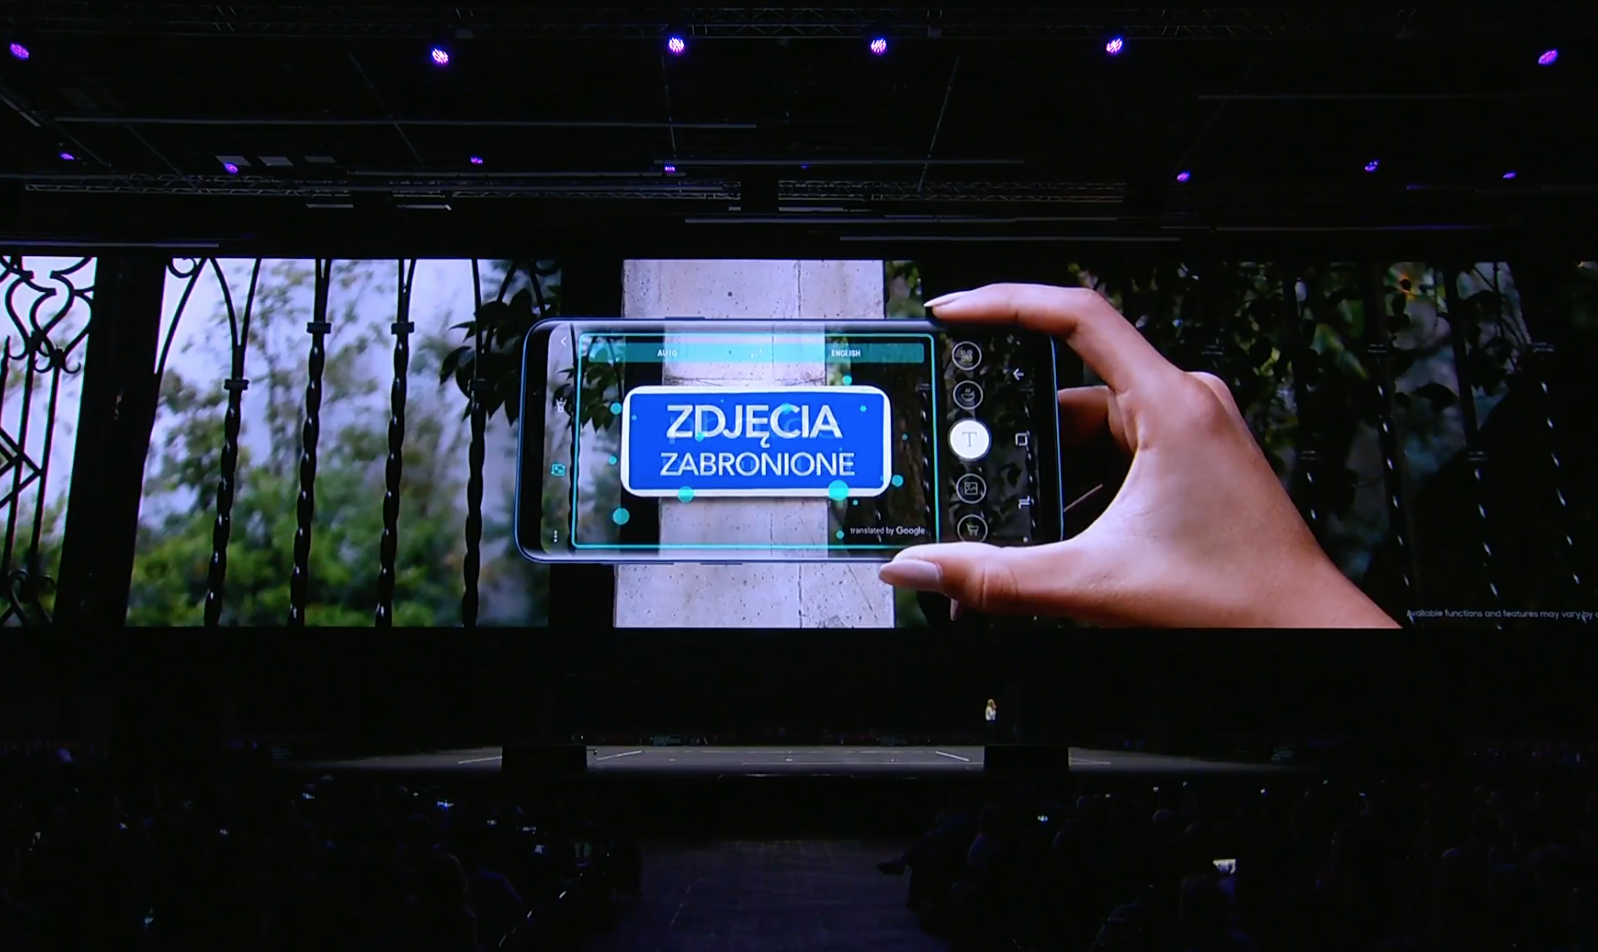 Bộ đôi Galaxy S9 và S9+ chính thức ra mắt với hàng loạt tính năng siêu khủng